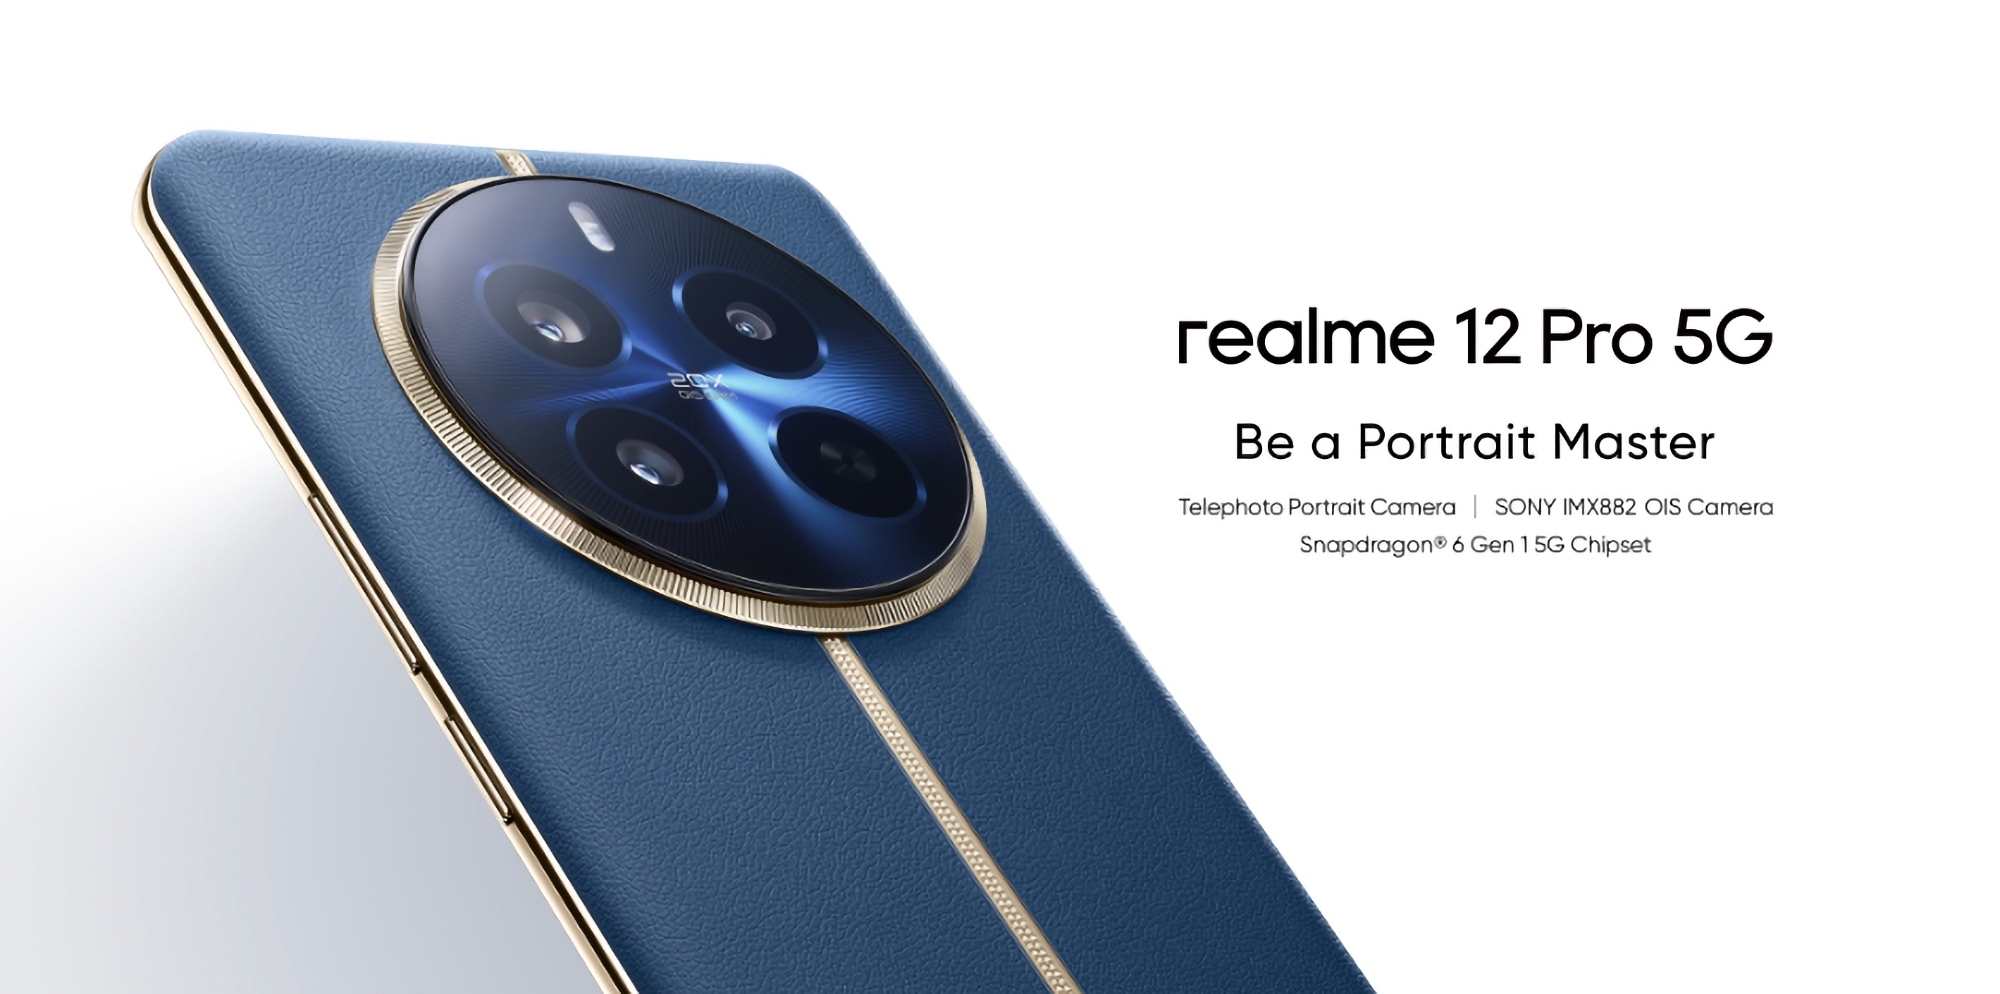 Realme 12 Pro : Écran OLED, processeur Snapdragon 6 Gen 1, batterie de 5000 mAh avec charge de 67W et appareil photo de 50 MP avec OIS pour 310 $.